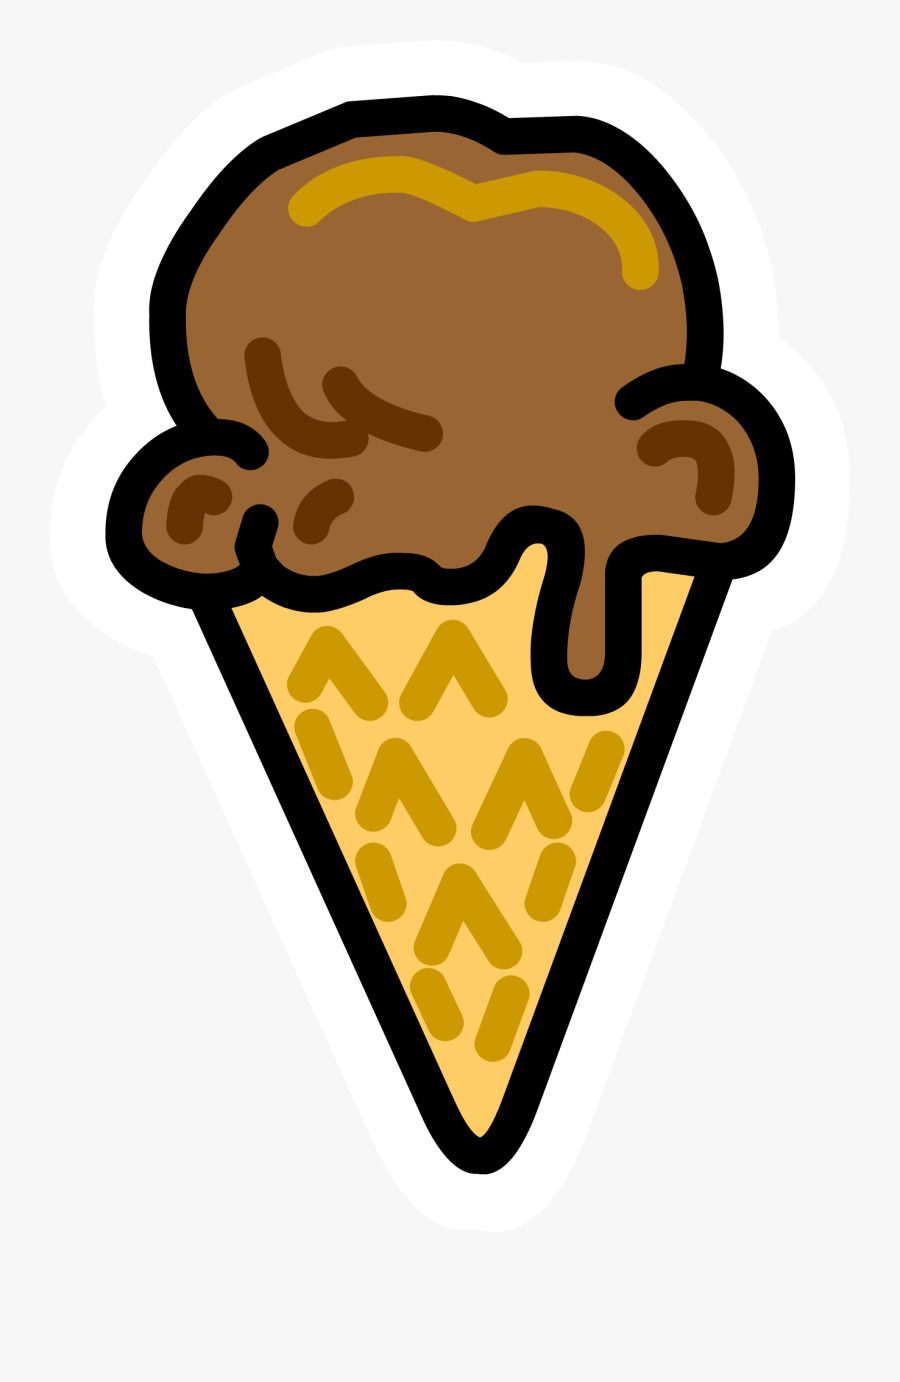 Icecream Cone Pin - Chocolate Ice Cream Clipart, Transparent Clipart